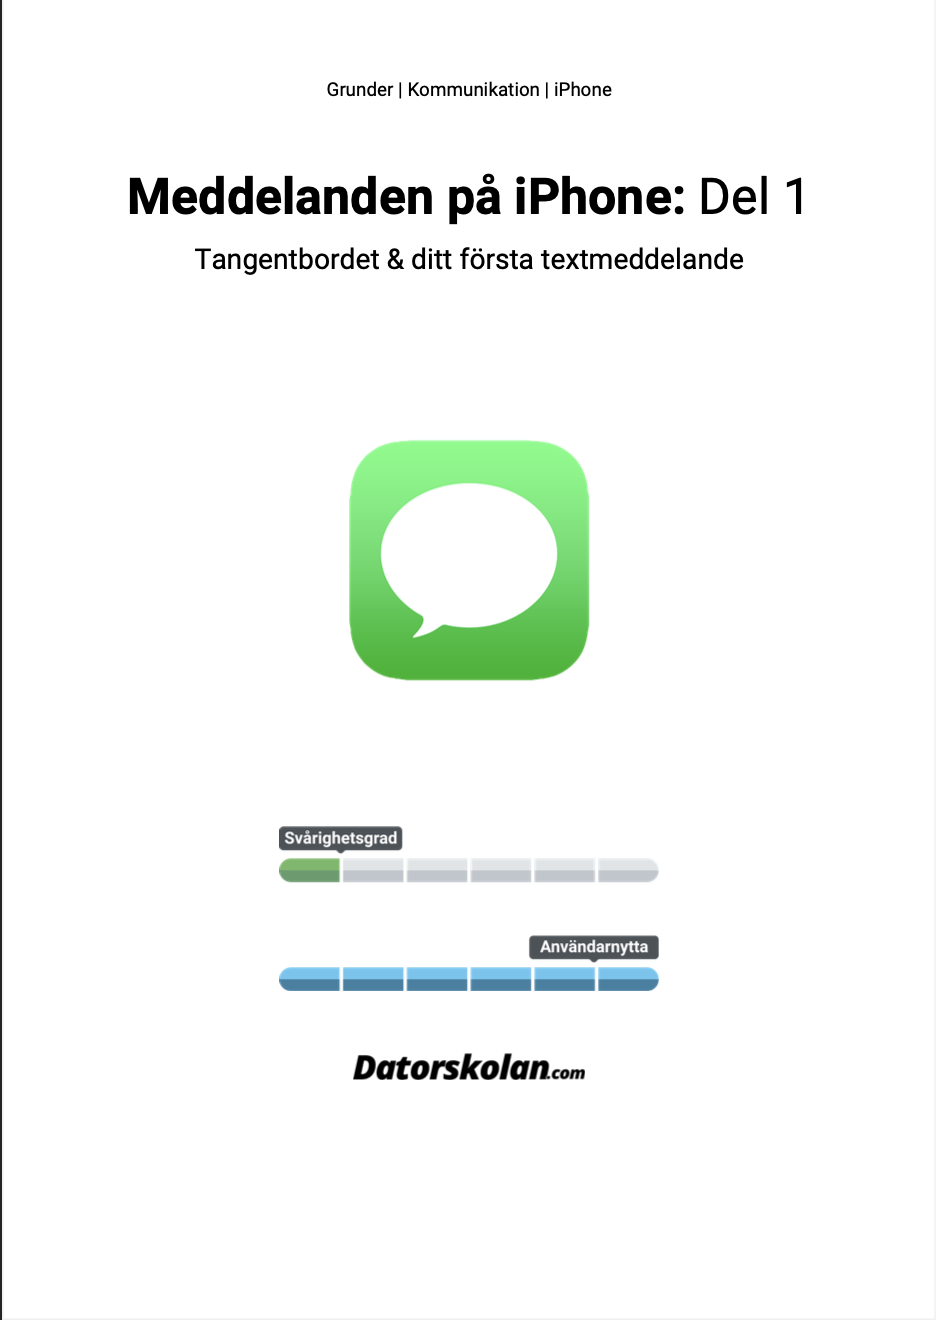 Framsidan av DigiGuiden om meddelanden på iPhone: Del 1